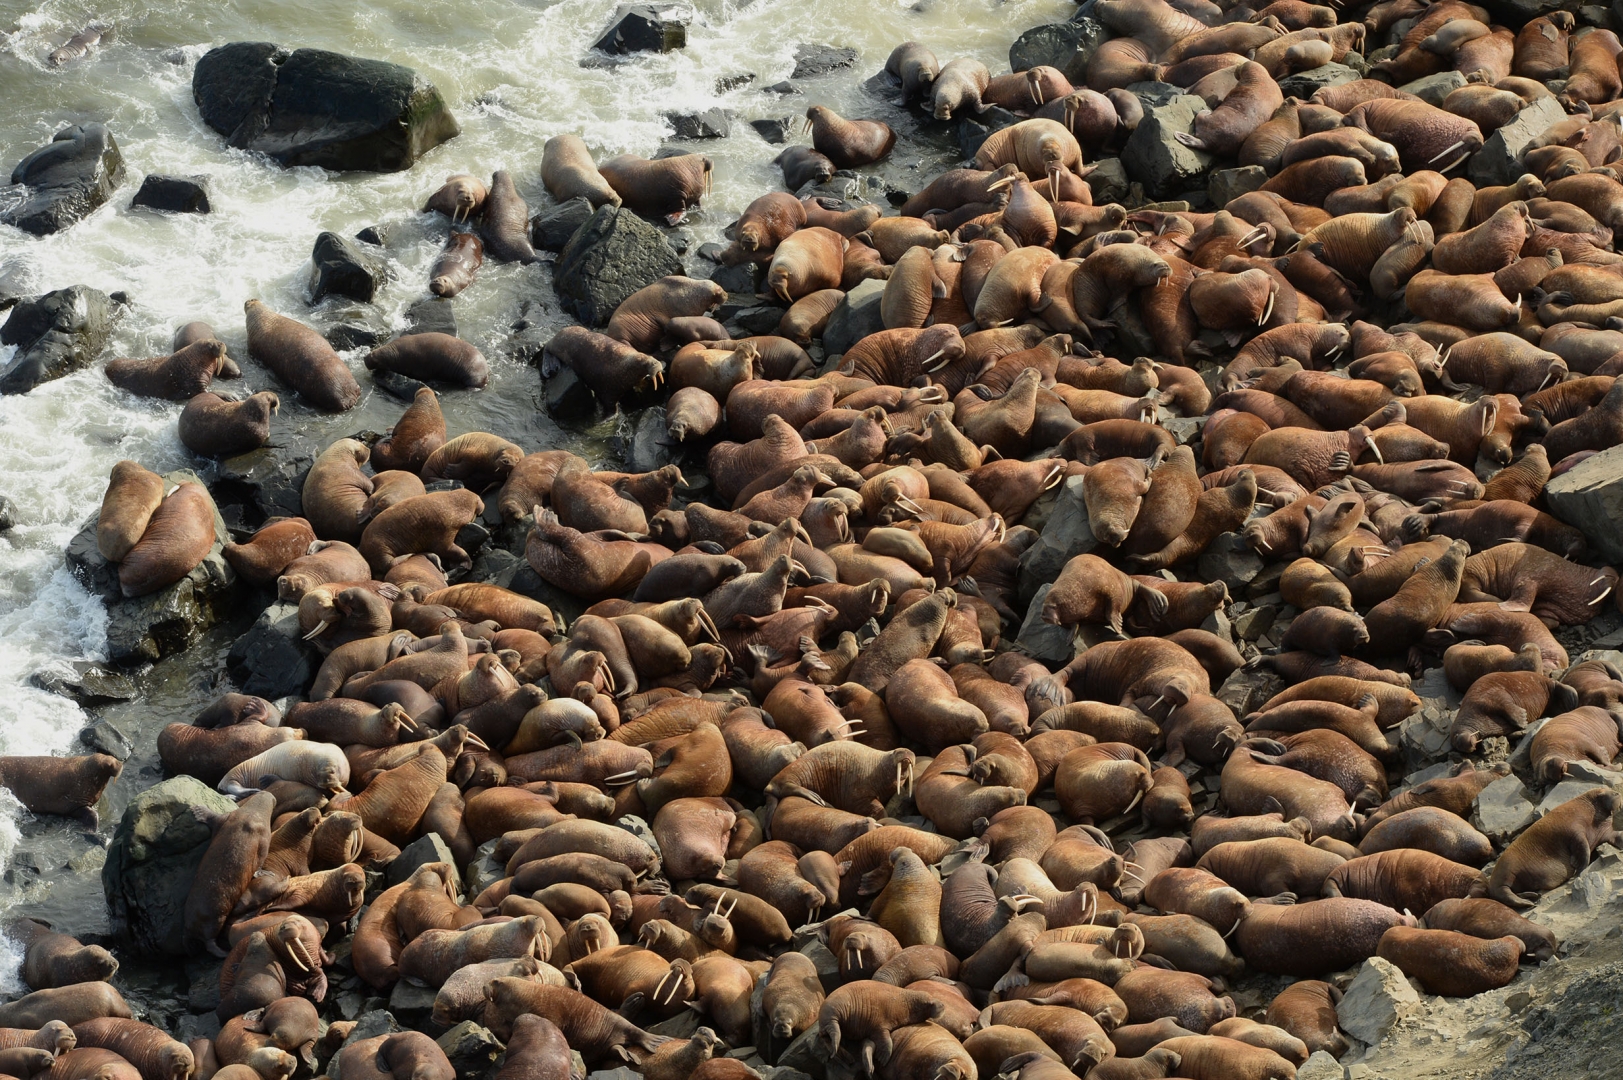 На архипелаге Земля Франца Иосифа учёные в 2021 году нашли самое большое лежбище моржа — больше 2000 поп